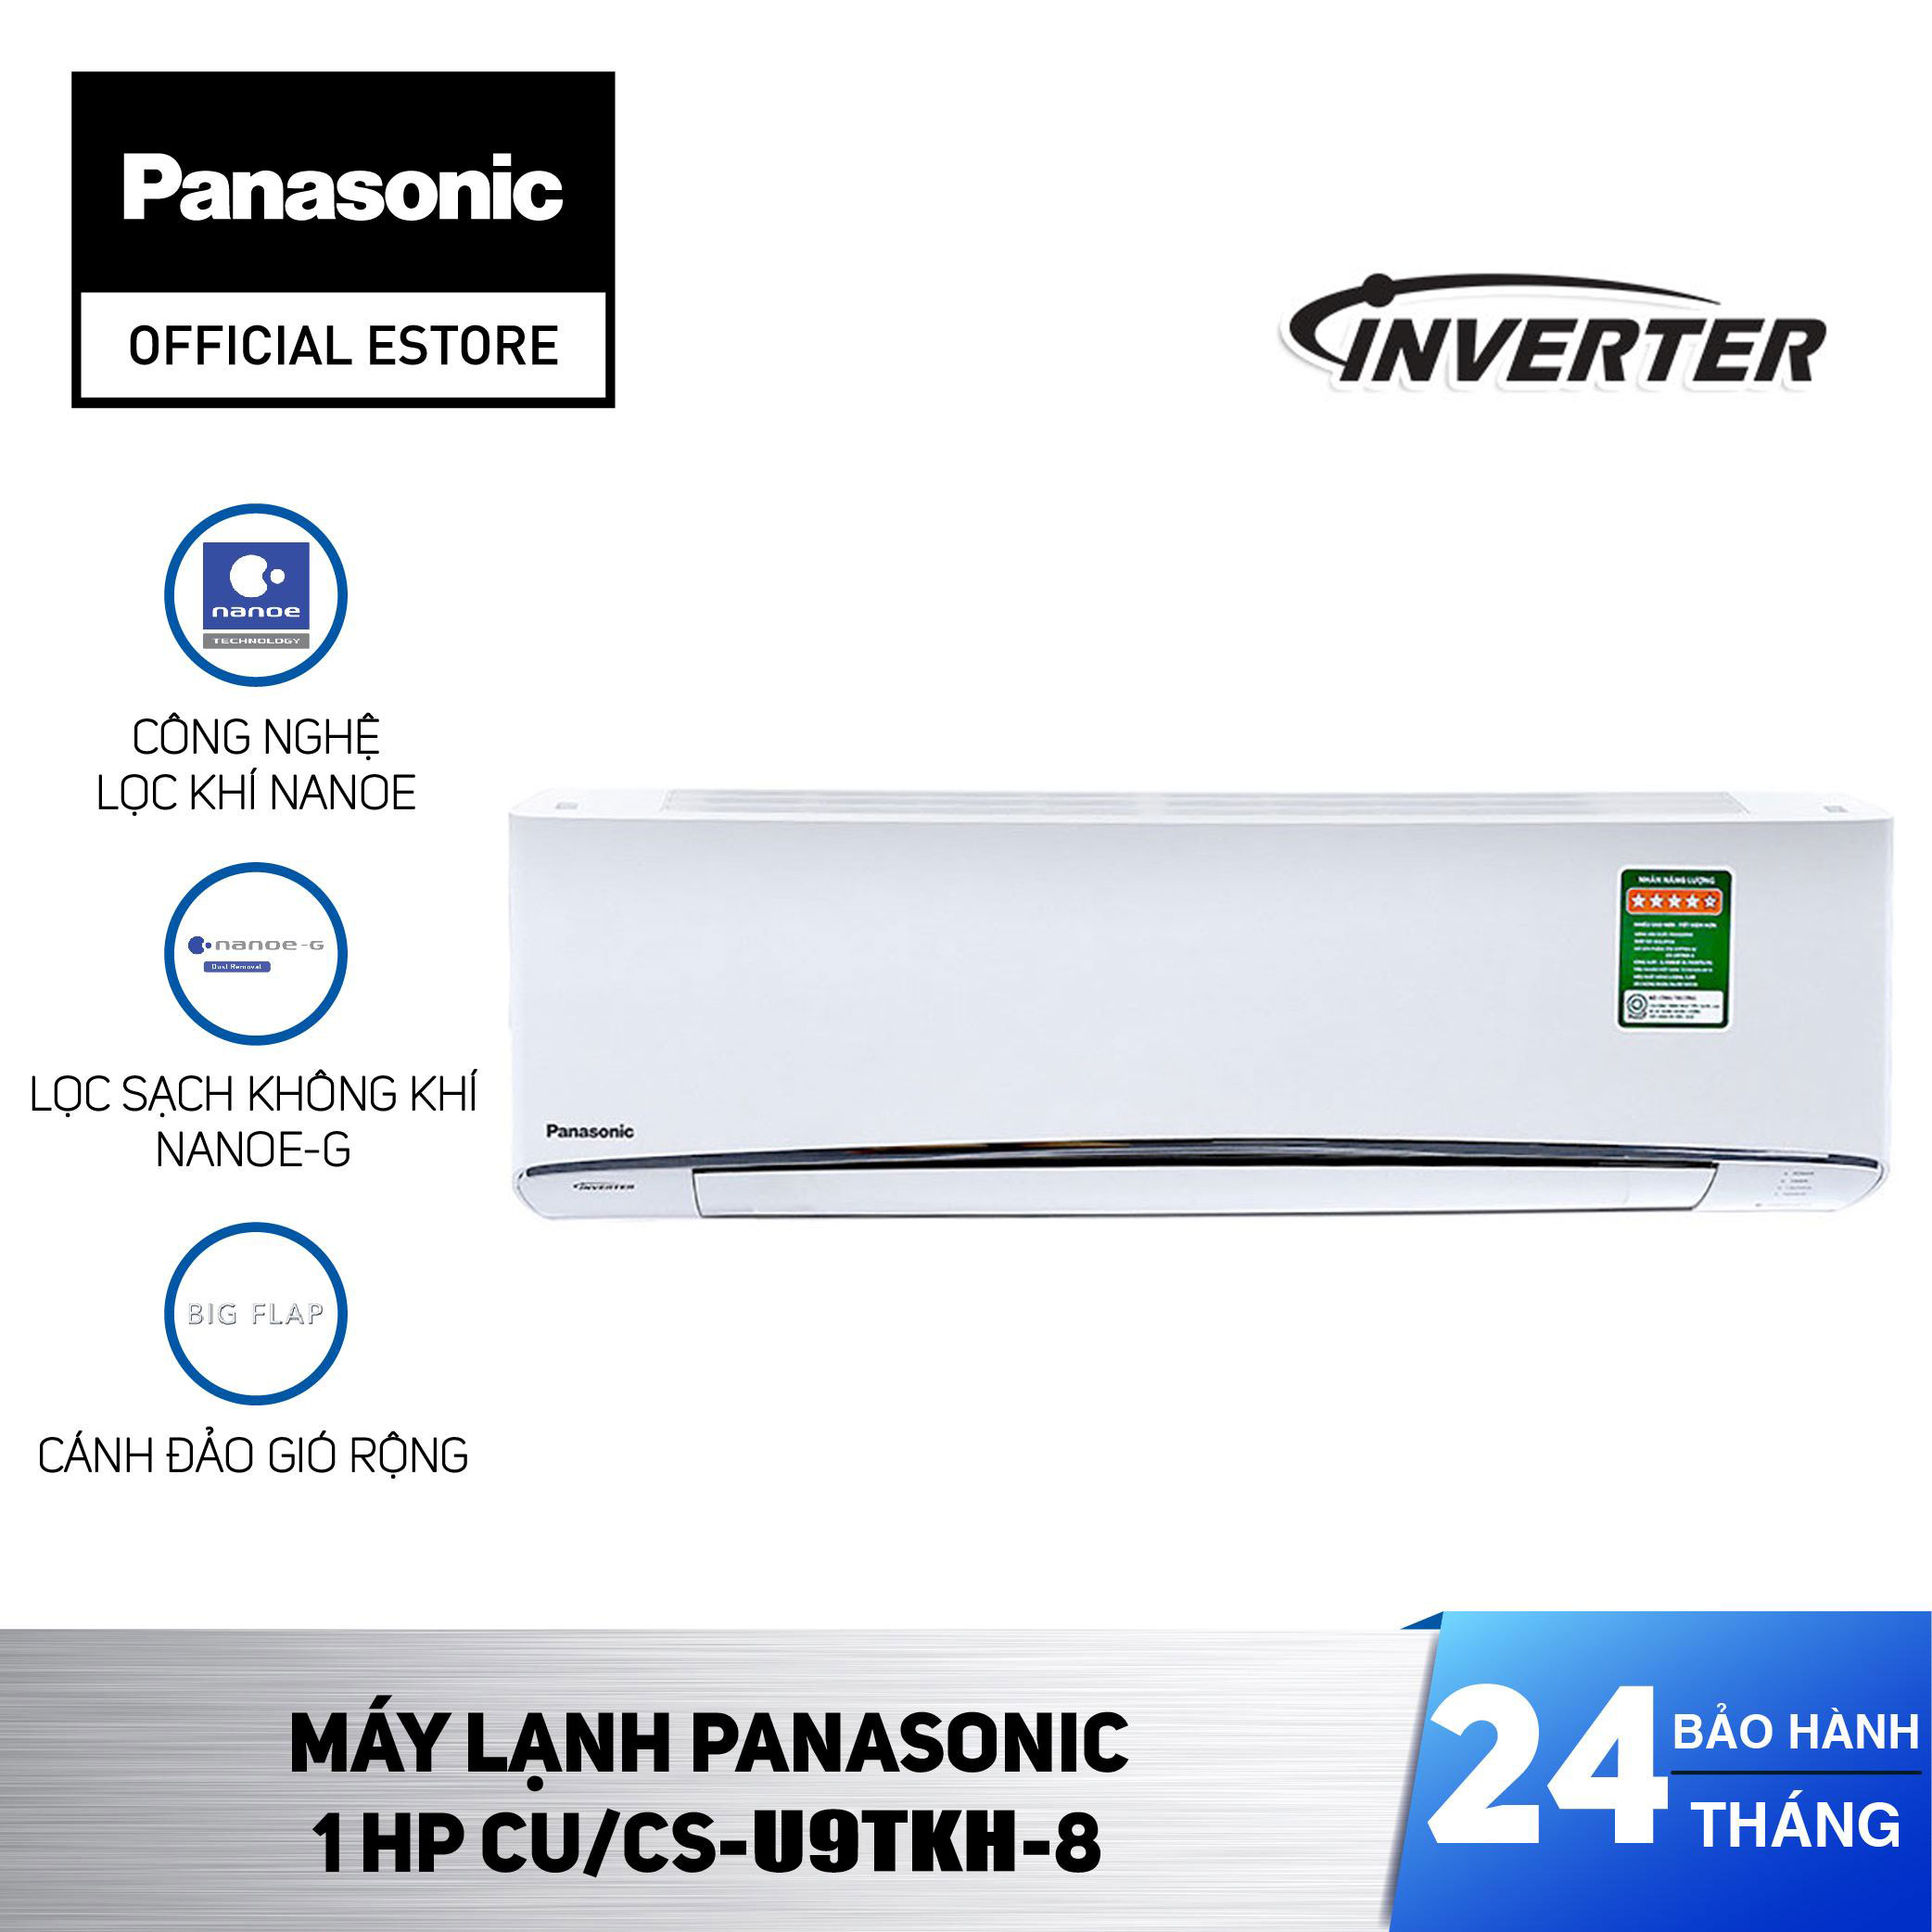 Máy lạnh Panasonic Inverter CU/CS-U9TKH-8 1HP